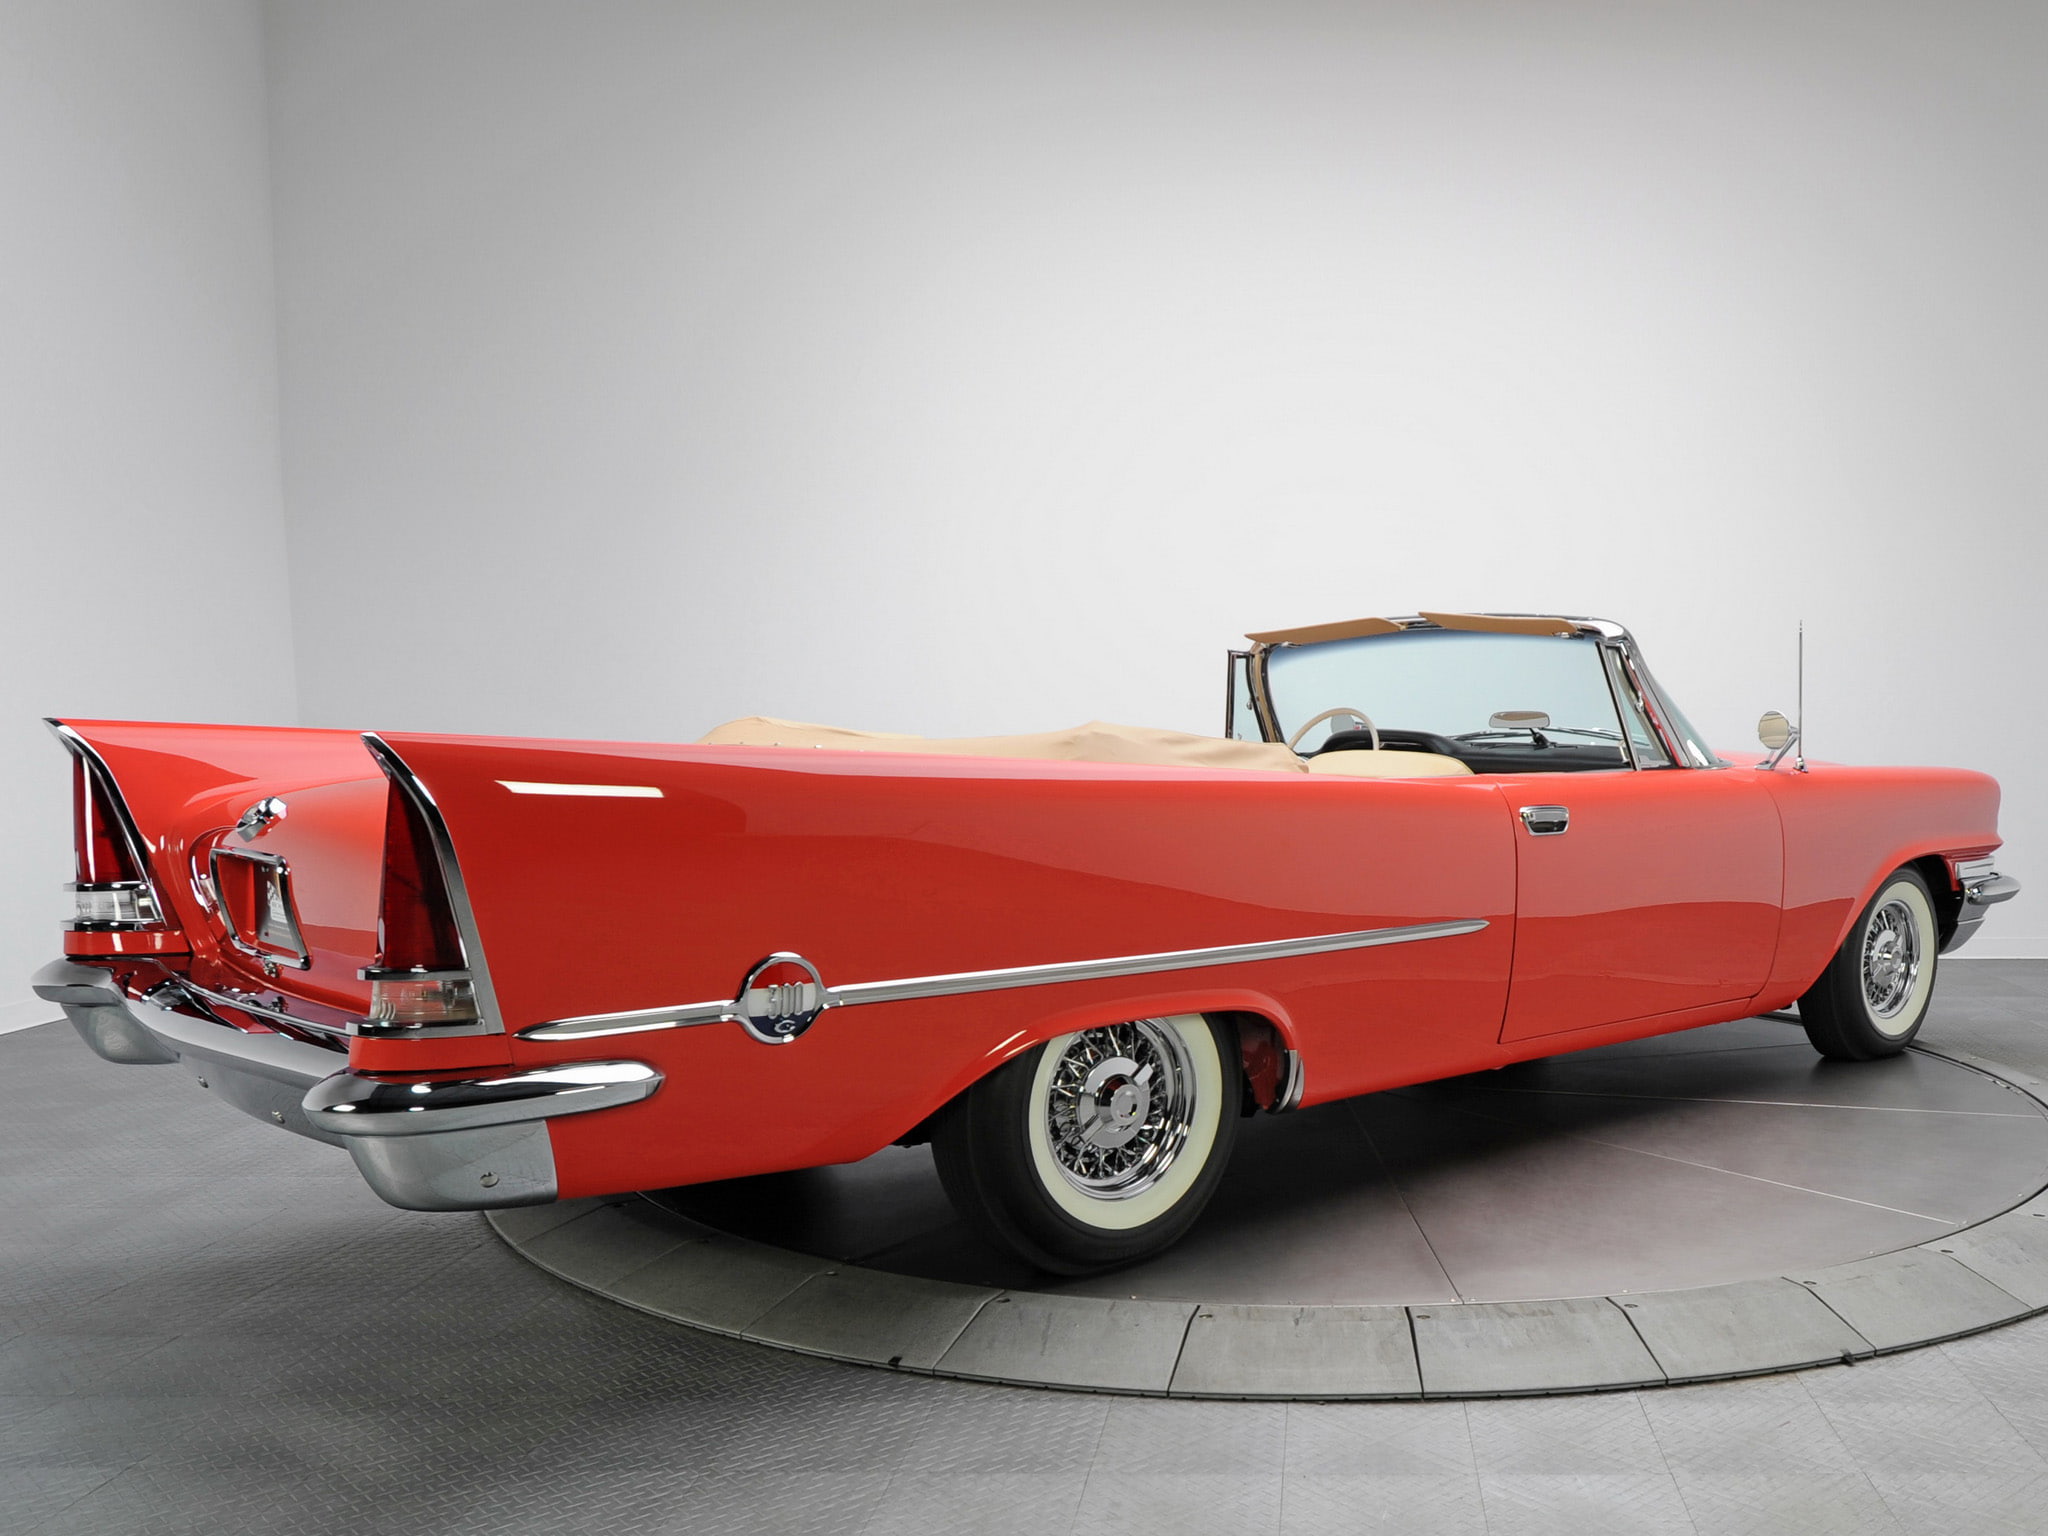 1957, 300c, chrysler, convertible, luxury, retro